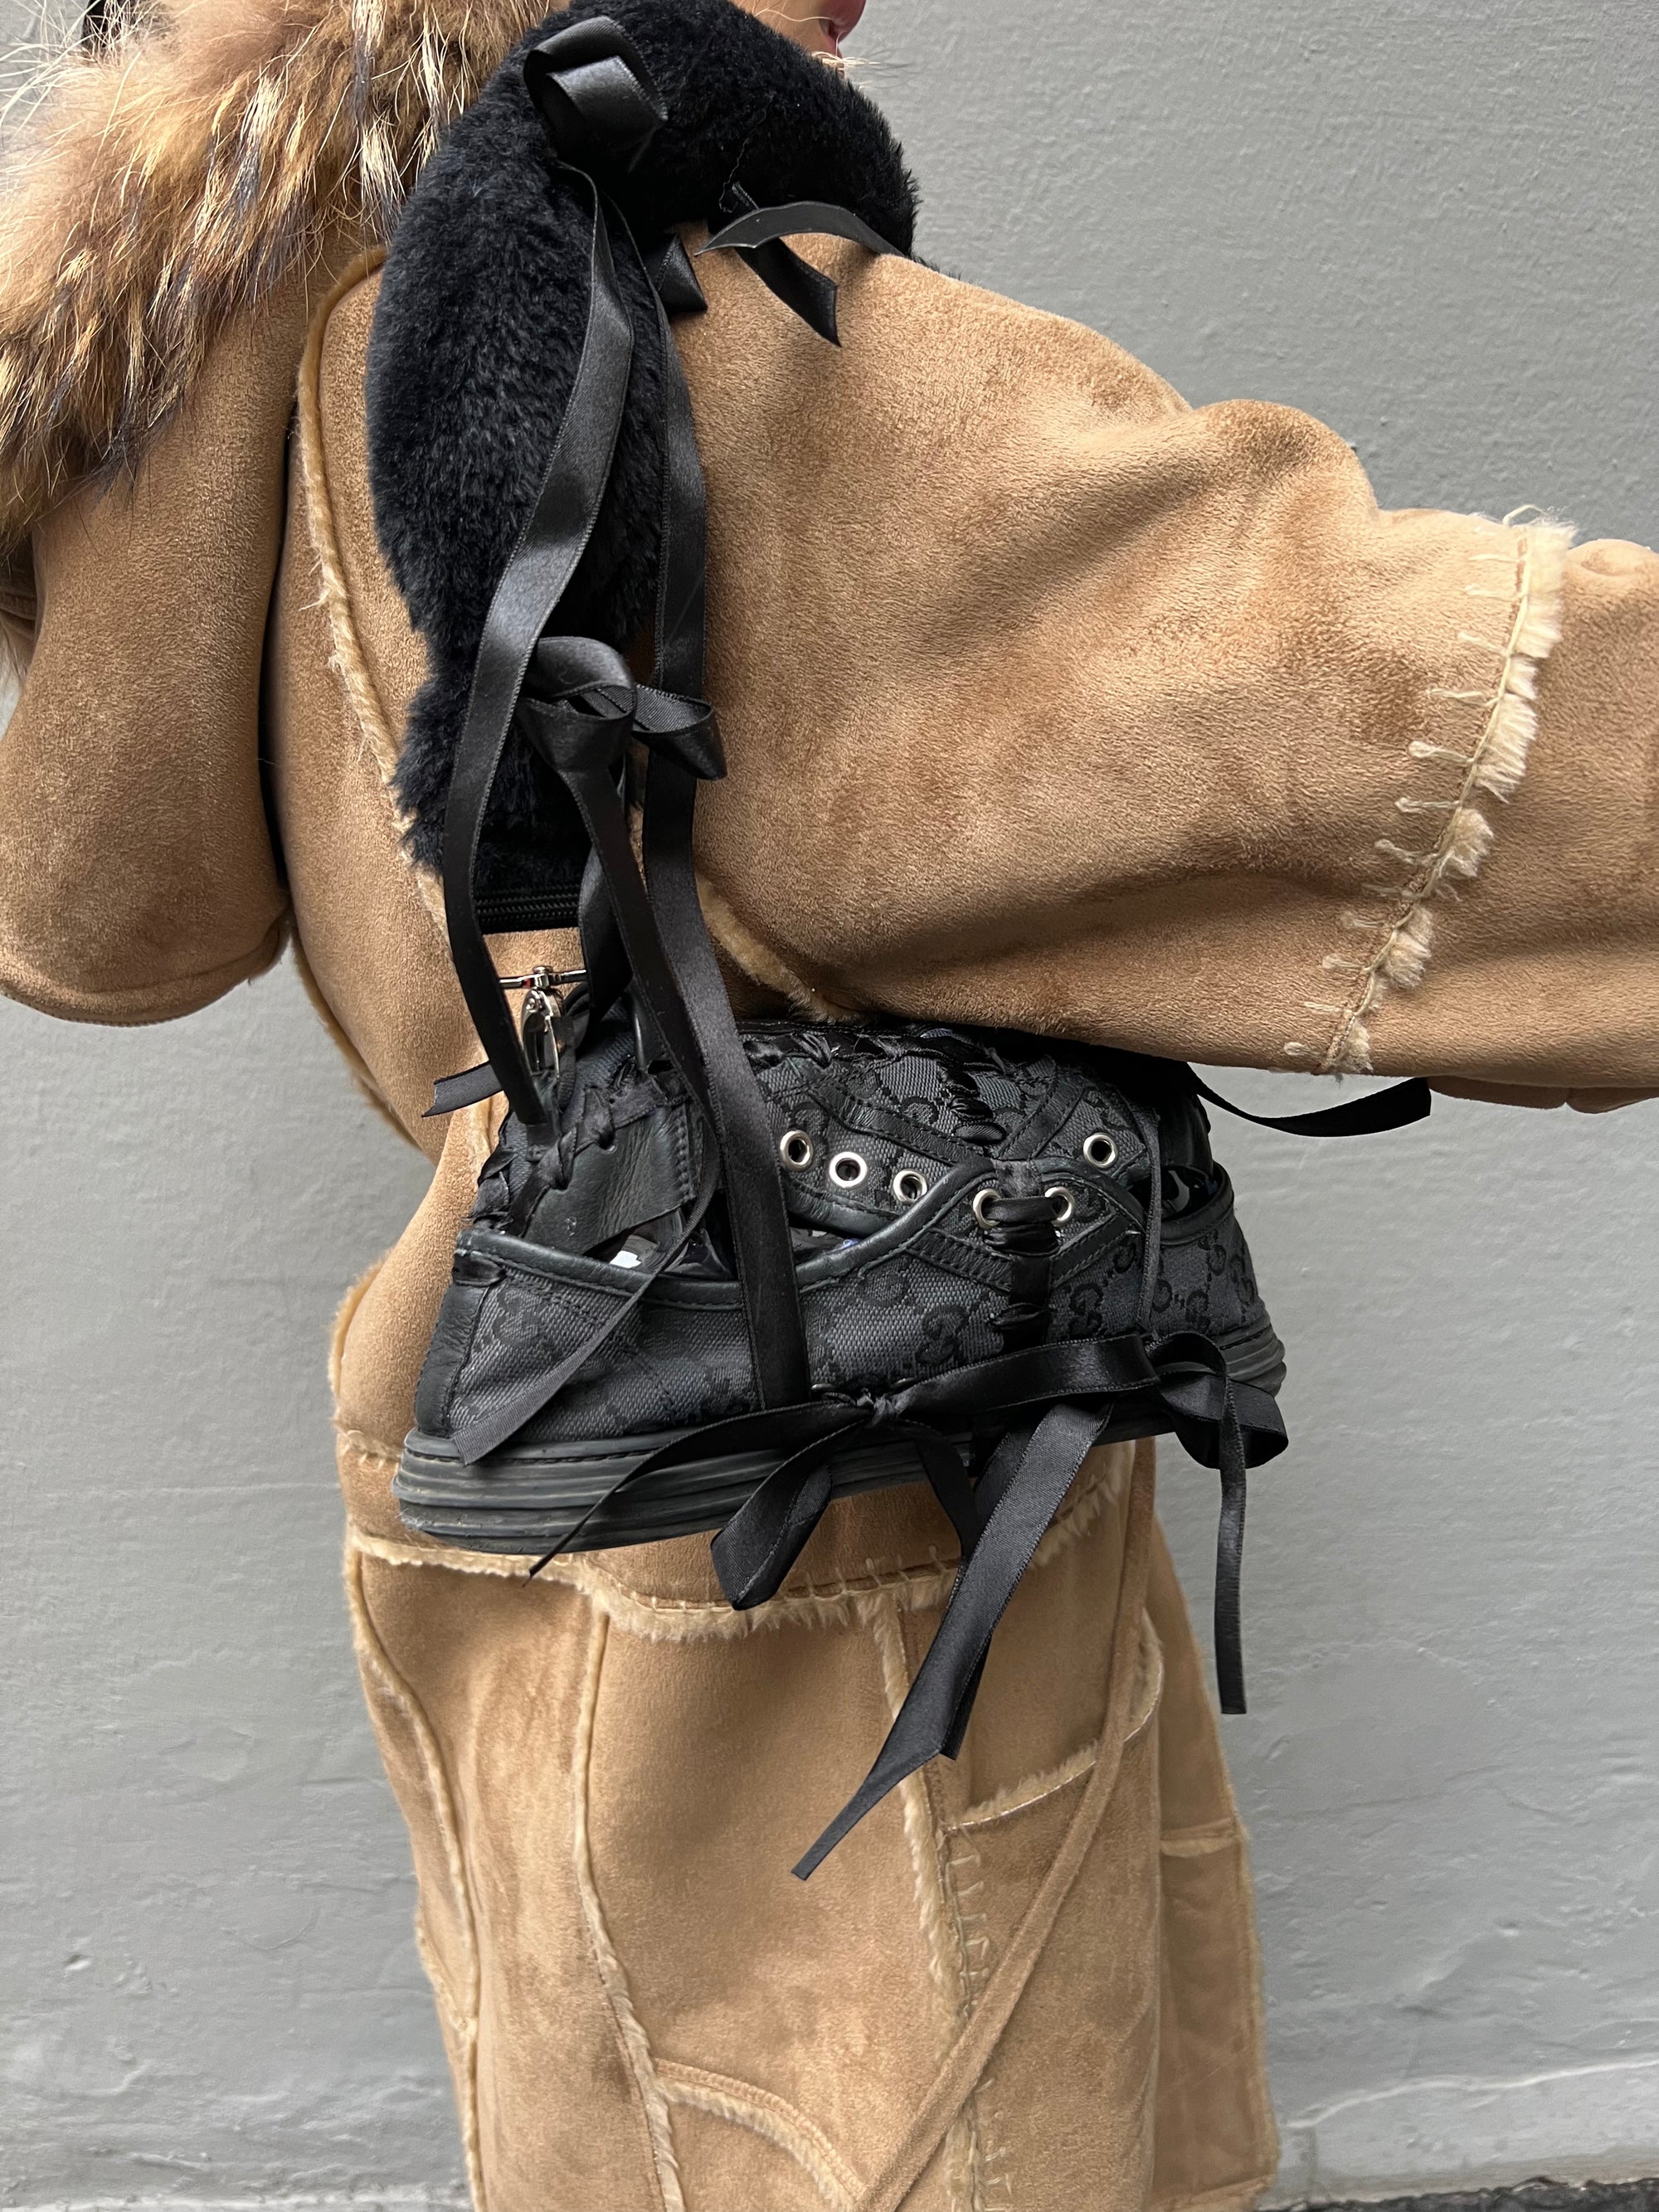 Tragebild der MILLENIUM2K Gucci Shoe Bag von vorne an einem Weiblichem Model.